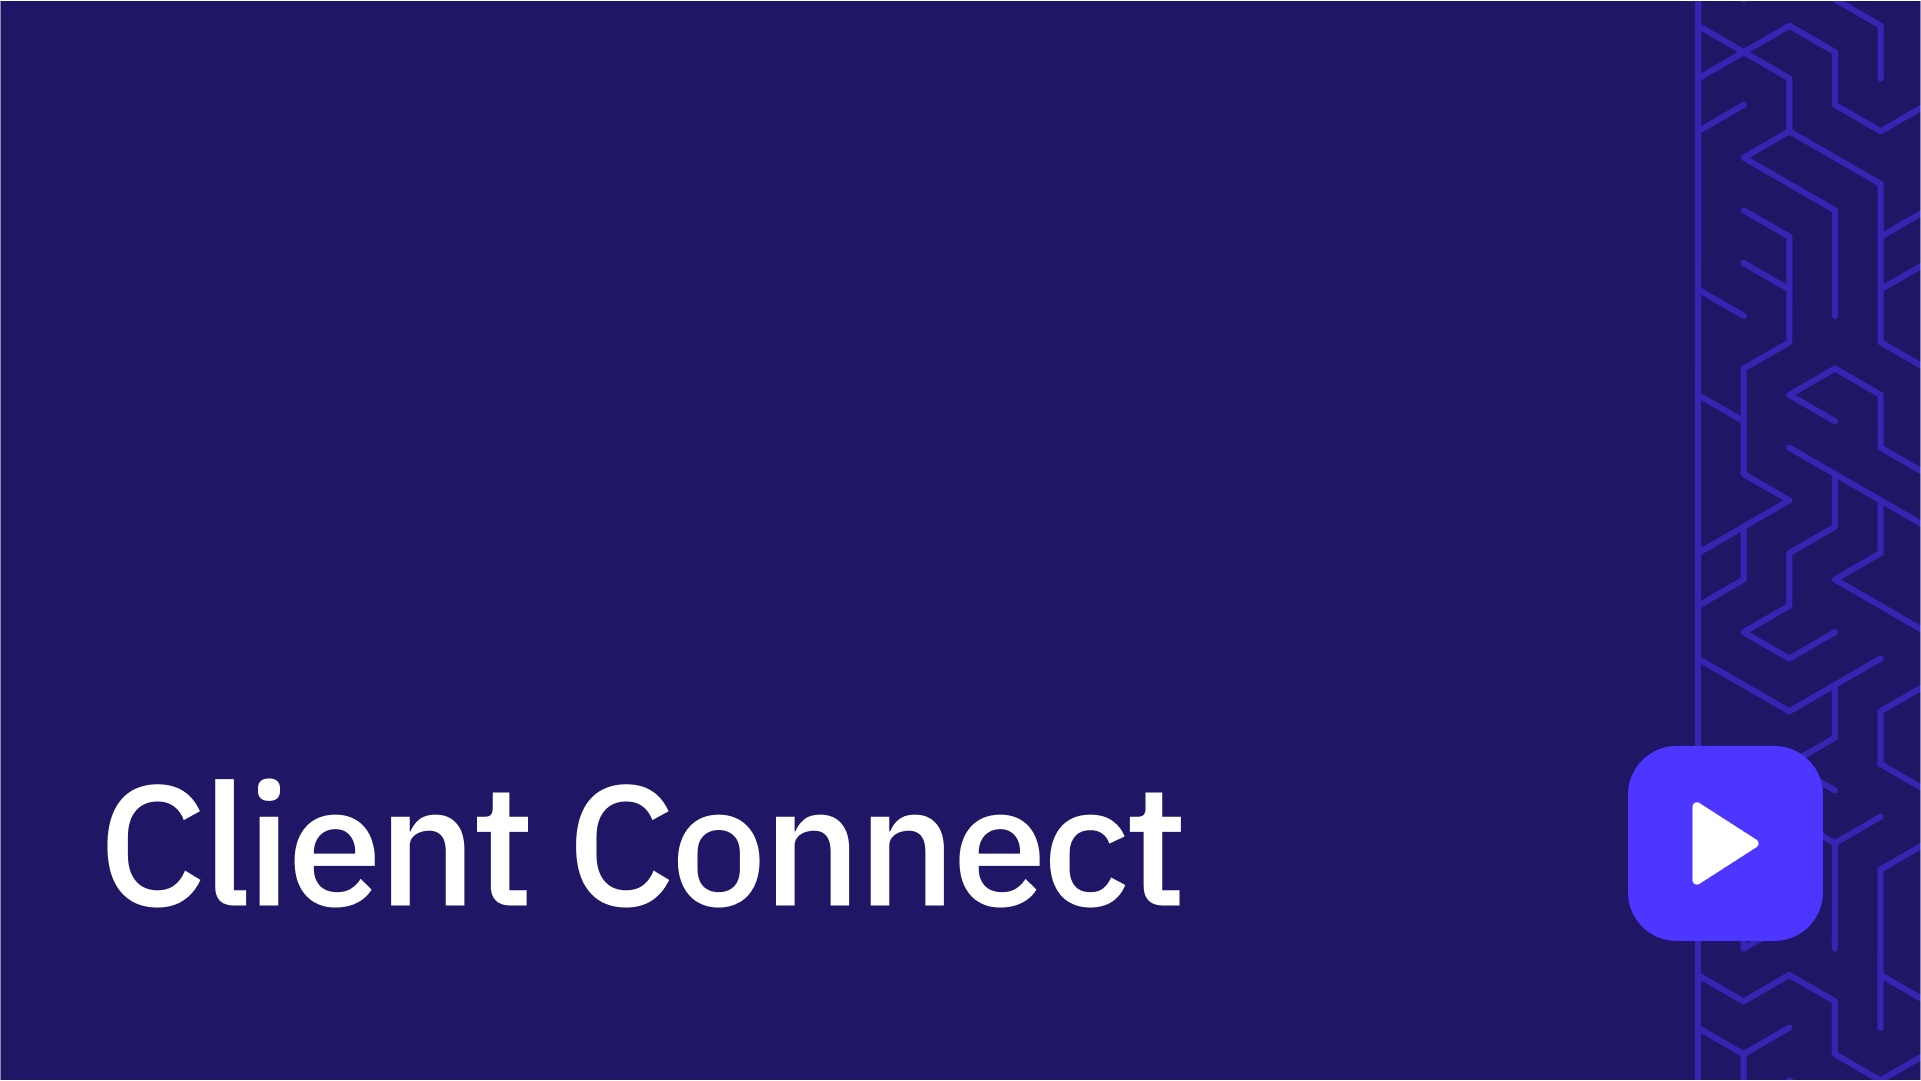 Client Connect